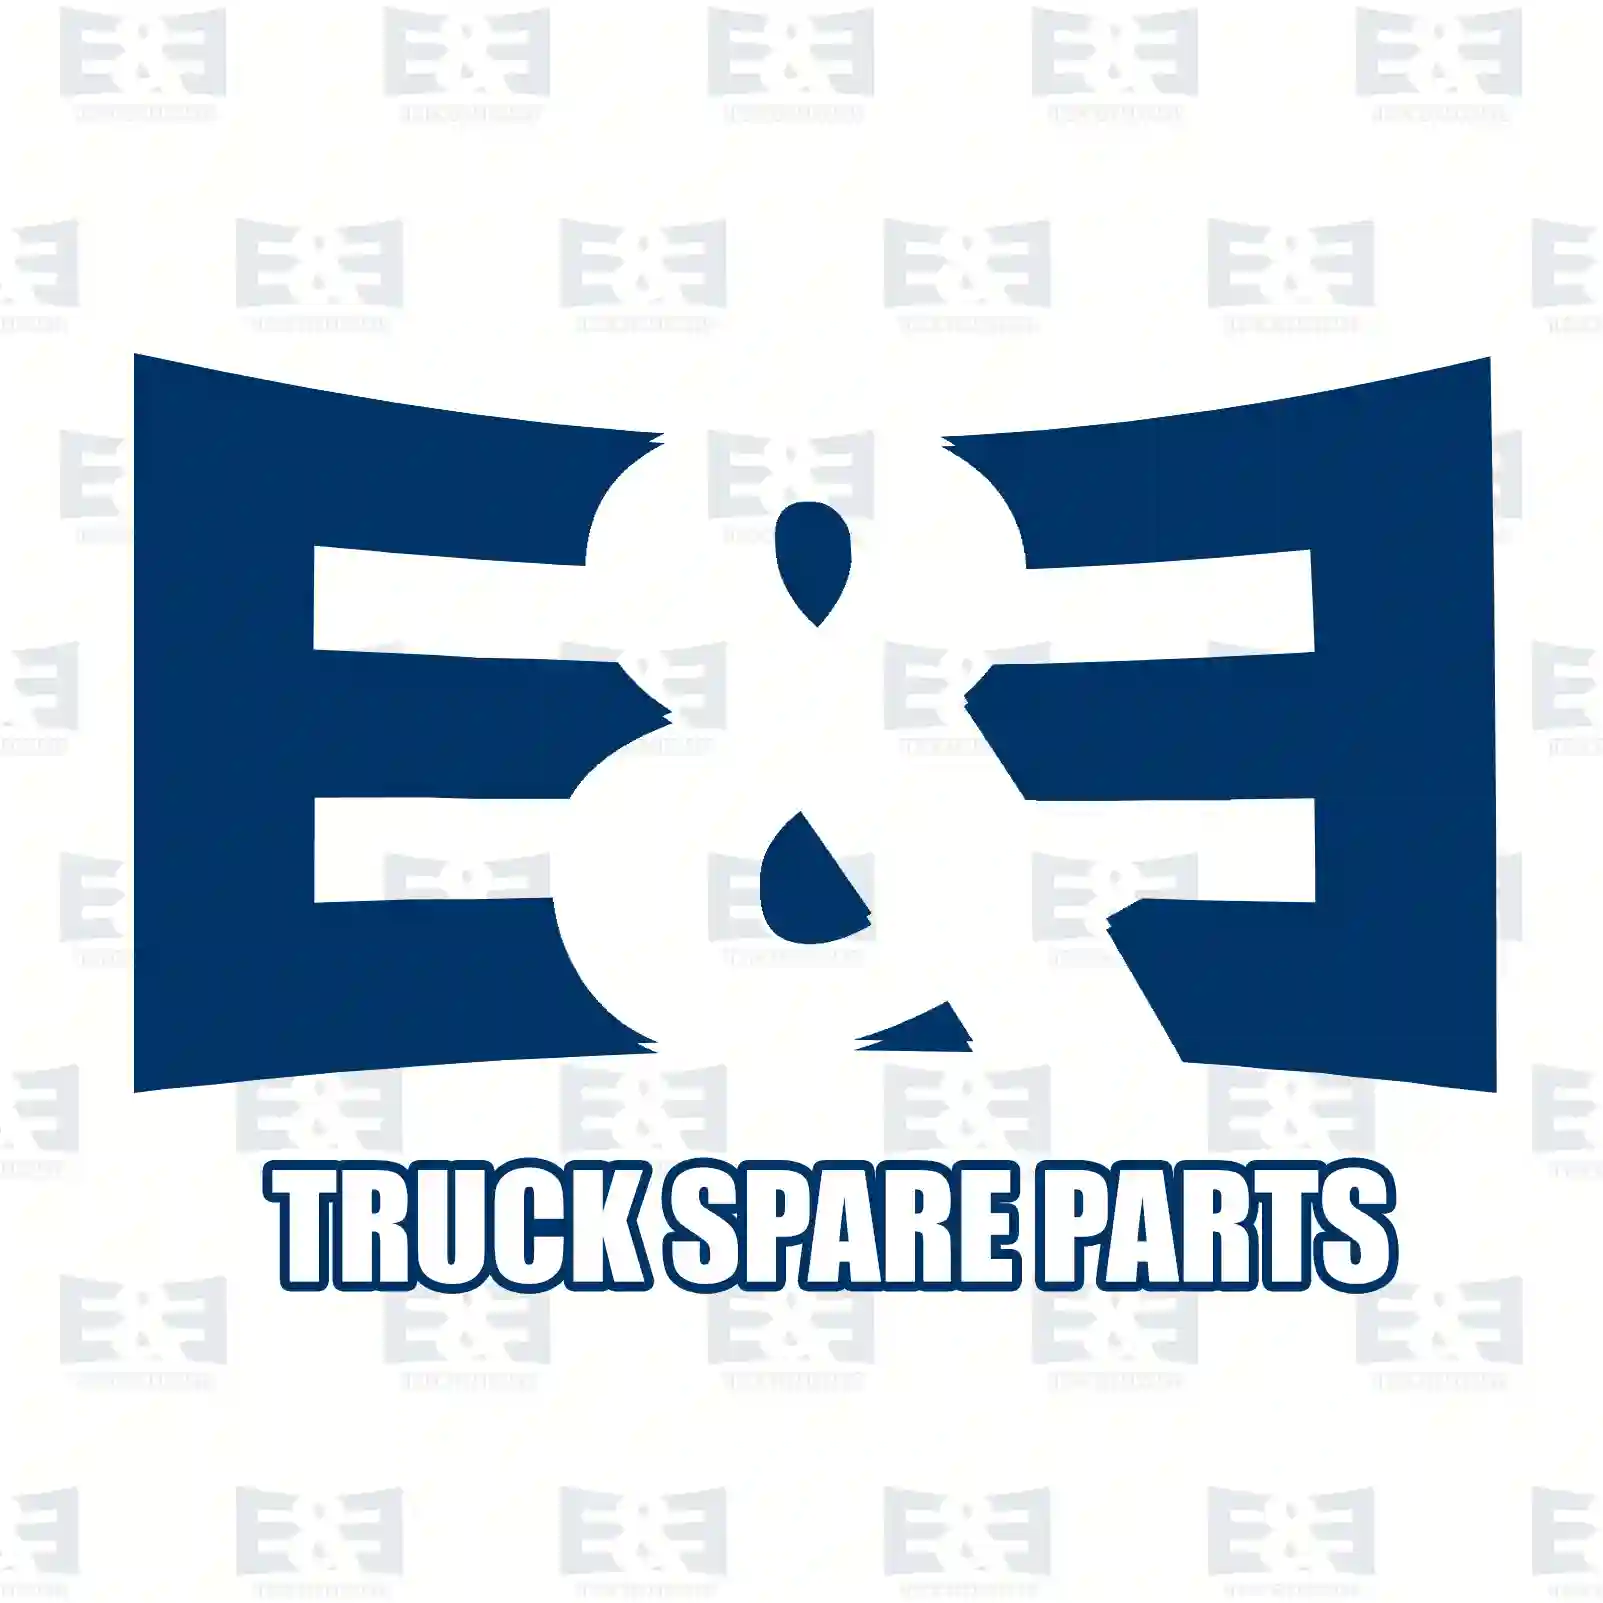 Oil cooler, retarder, 2E2277756, 5001866045, 74209 ||  2E2277756 E&E Truck Spare Parts | Truck Spare Parts, Auotomotive Spare Parts Oil cooler, retarder, 2E2277756, 5001866045, 74209 ||  2E2277756 E&E Truck Spare Parts | Truck Spare Parts, Auotomotive Spare Parts